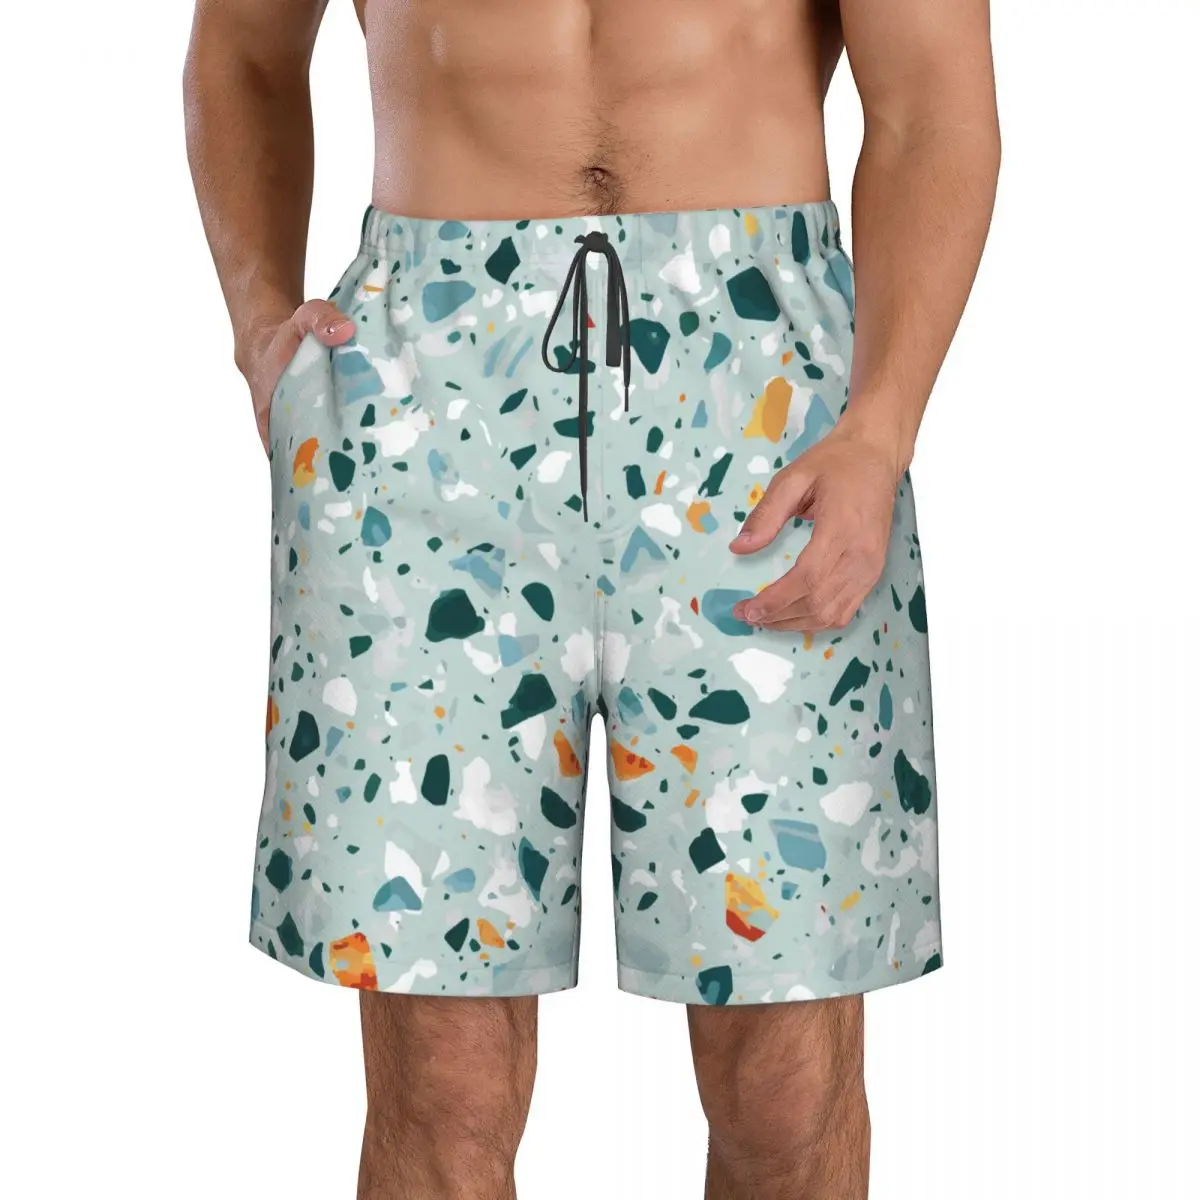 

Шорты для плавания мужские быстросохнущие, одежда для купания, купальный костюм, трусы, летняя пляжная одежда с принтом терраццо, камни, Чирок